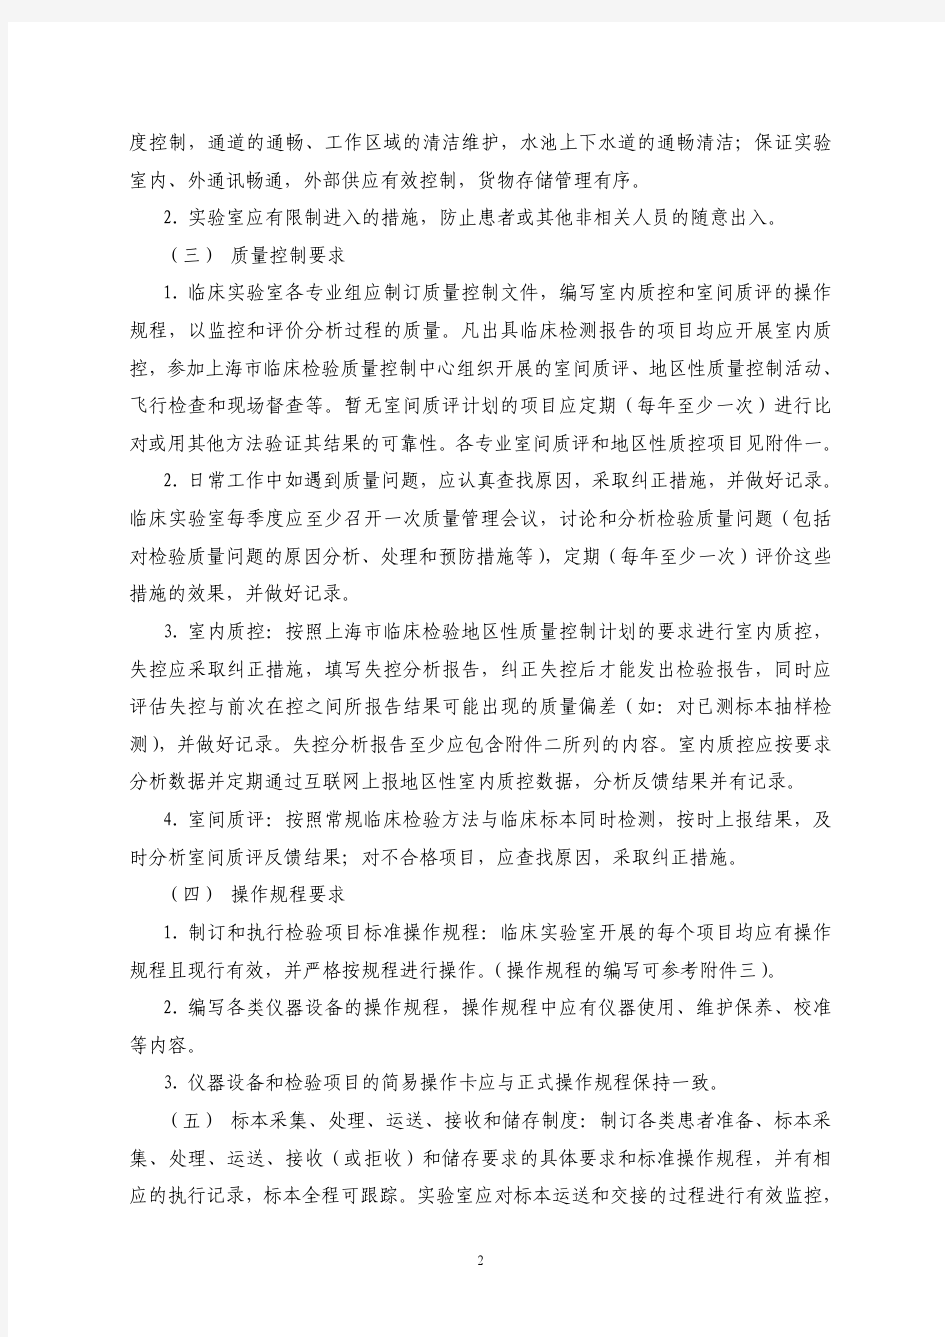 2012年上海市医疗机构临床实验室质量管理基本内容和要求(二级及以上医疗机构)